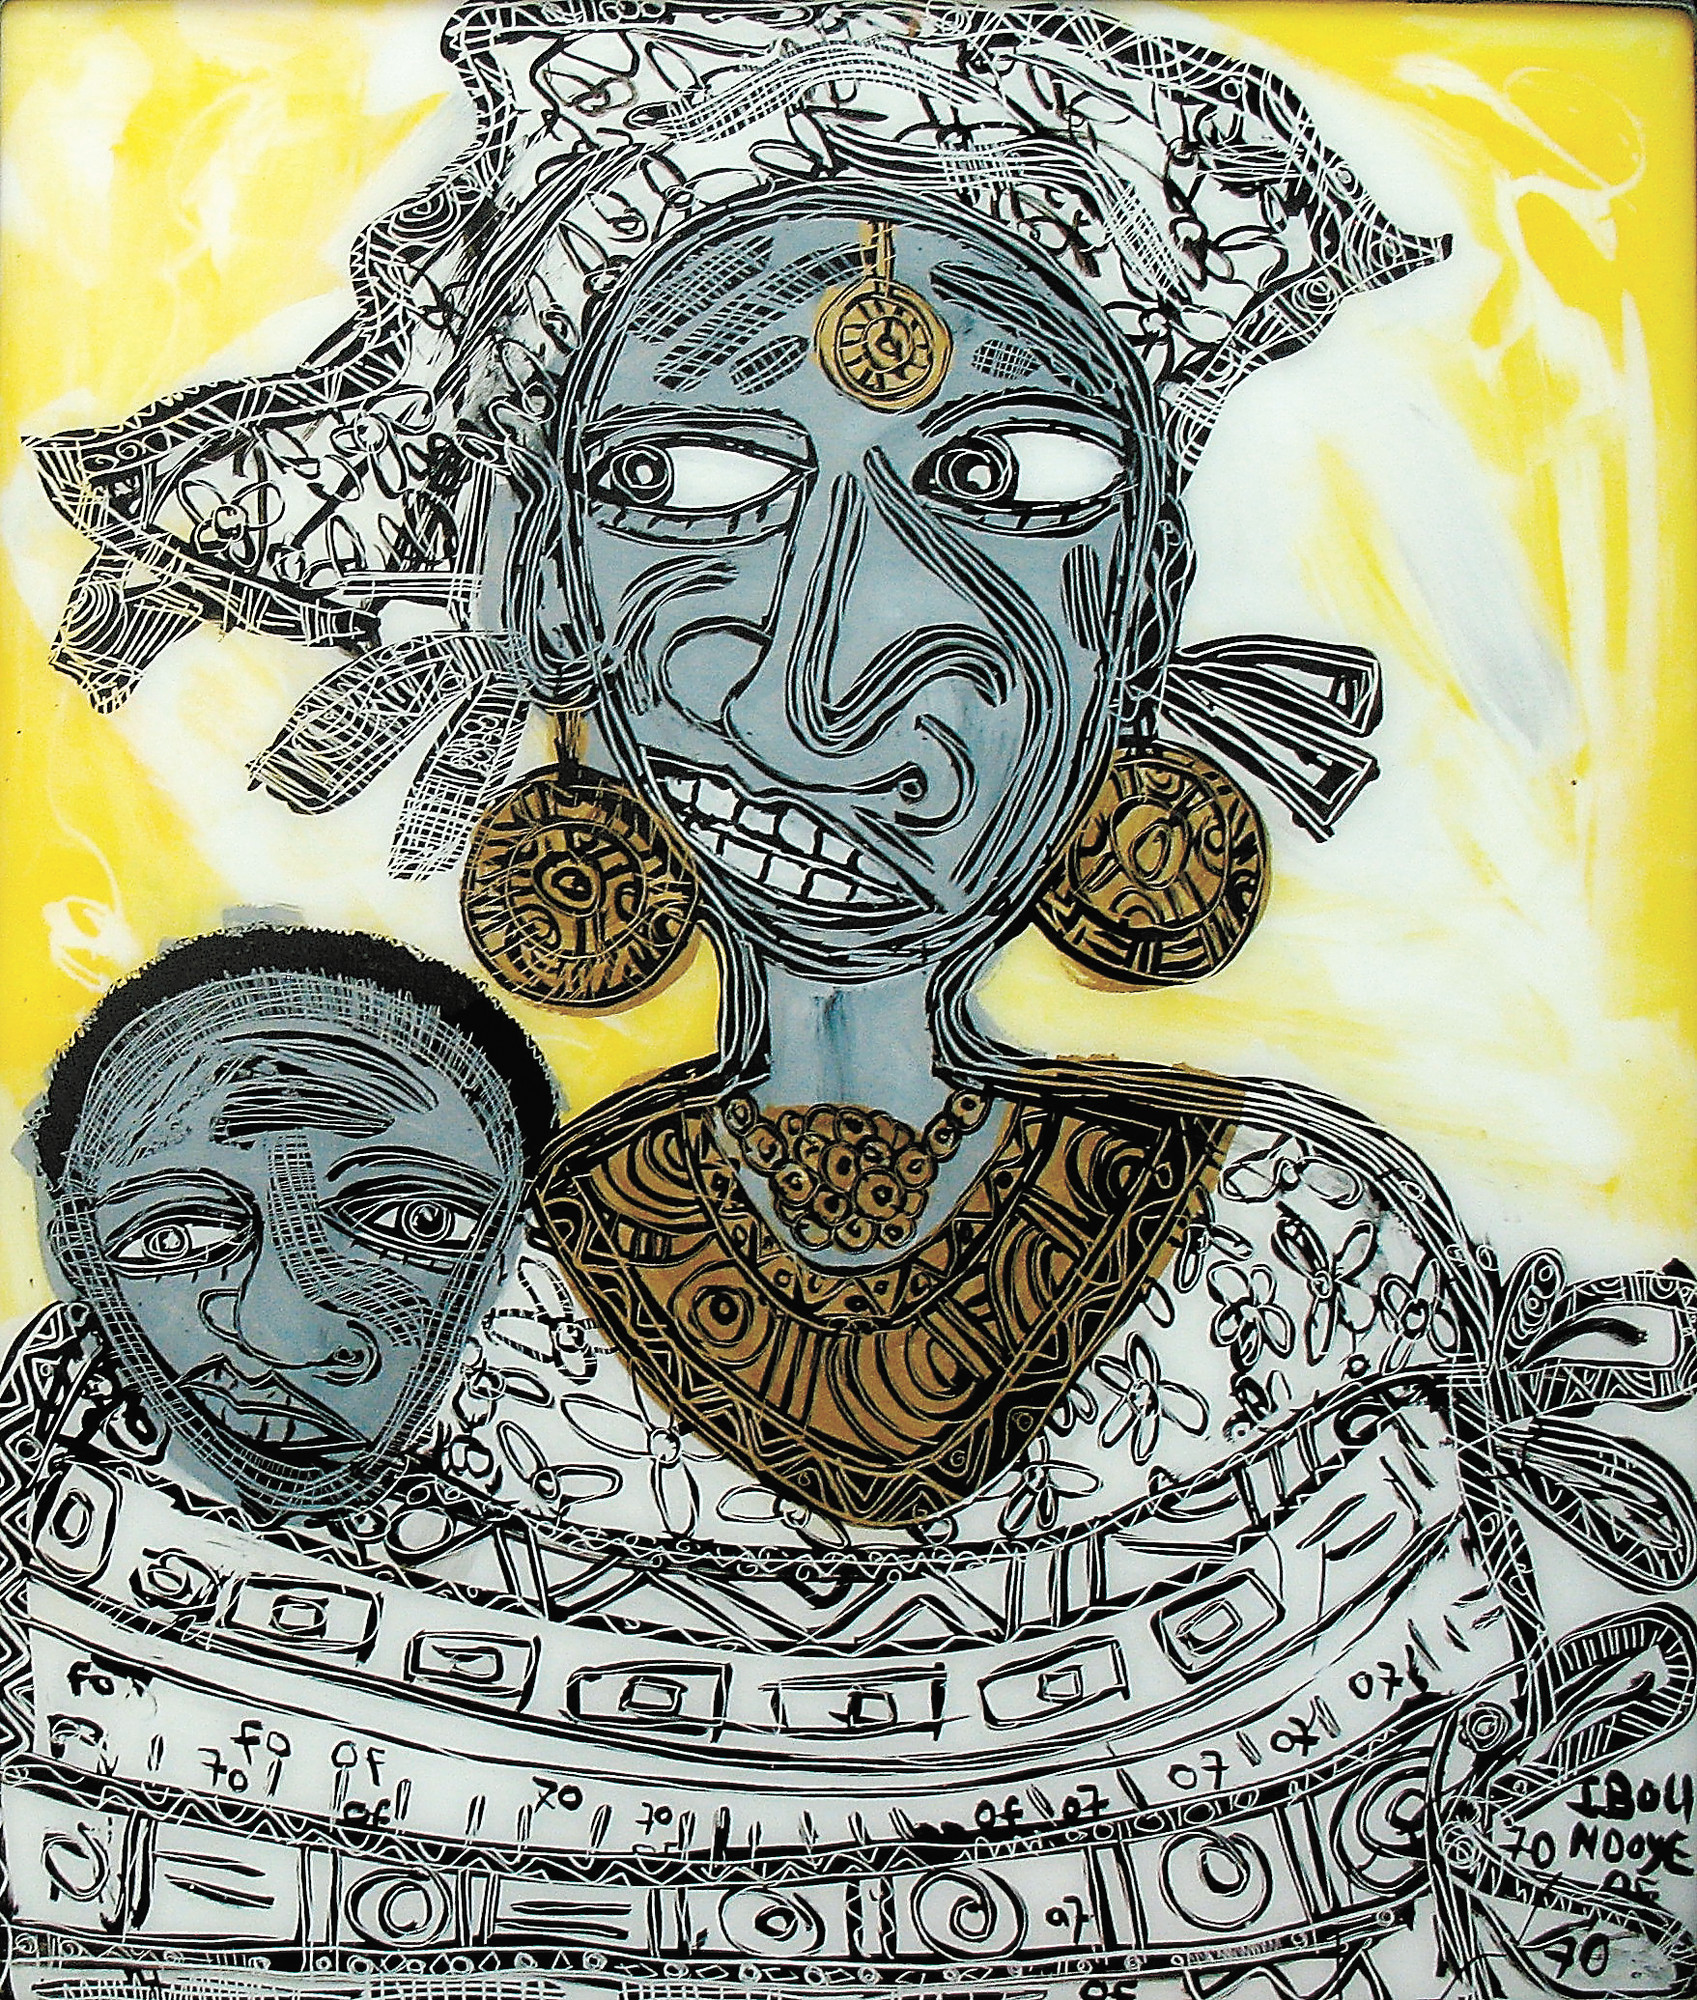 'Traditional African Woman' (2007), by Ibou Ndoye.